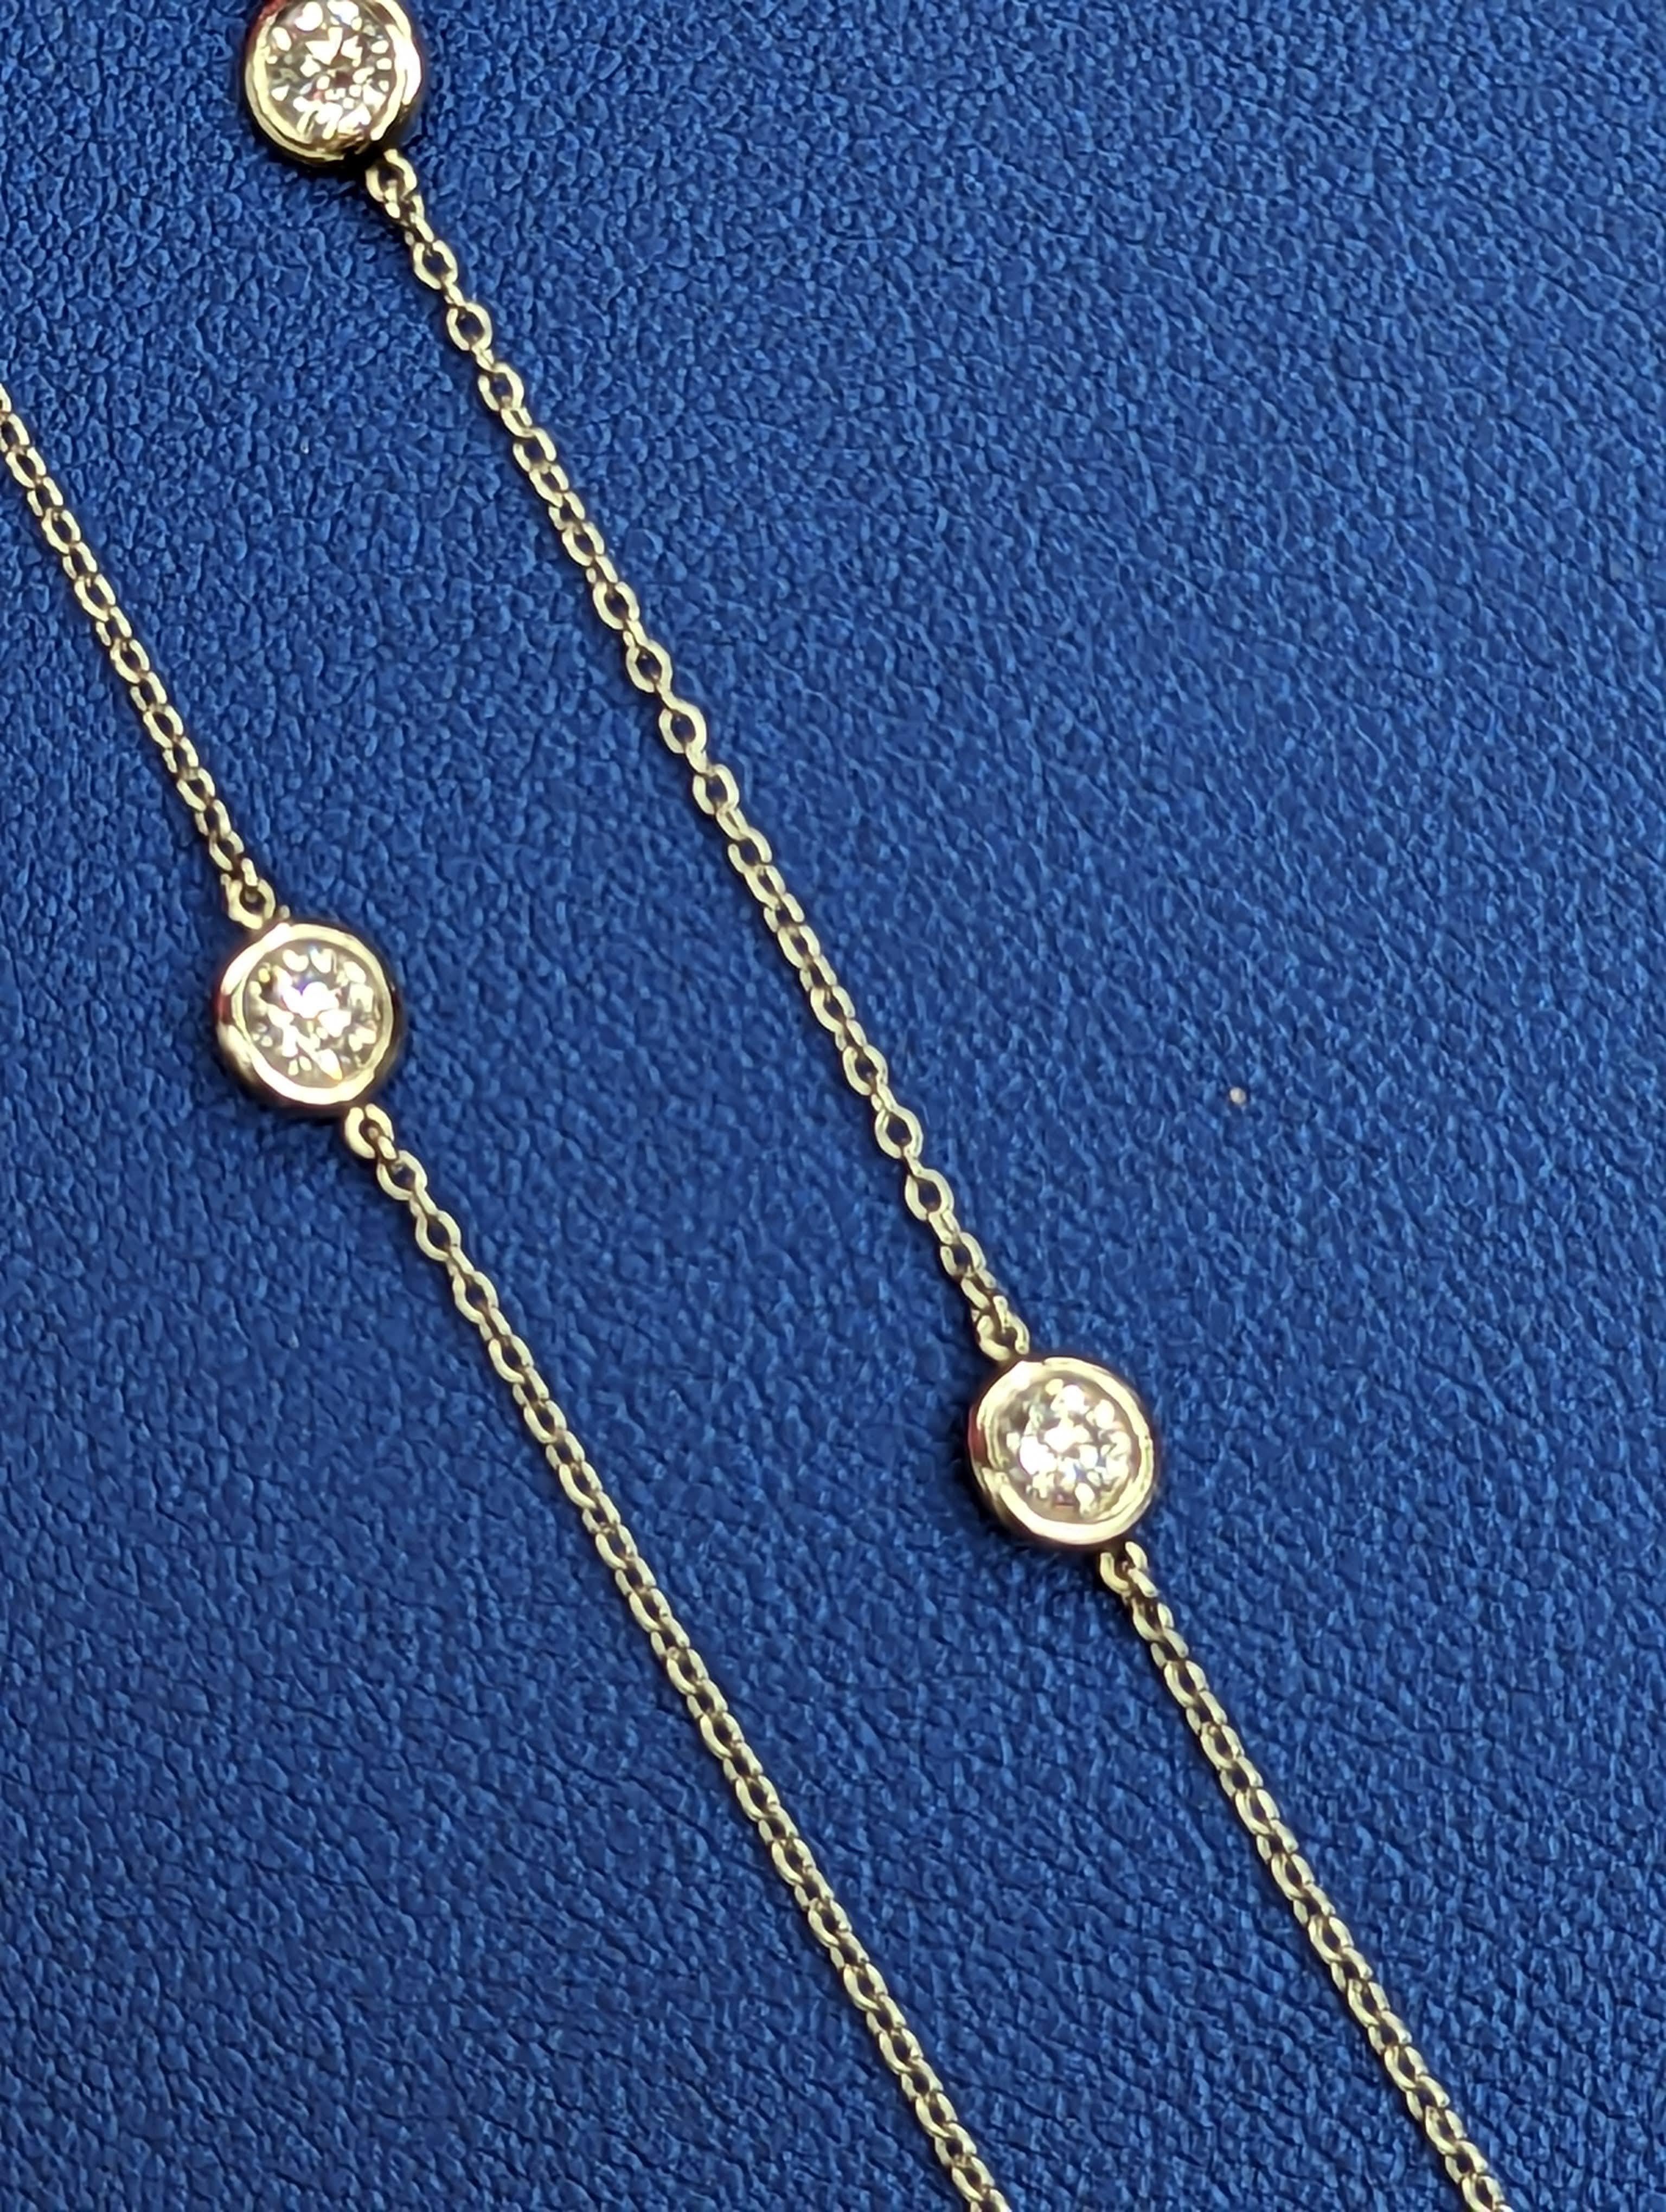 Tiffany & Company Platin 1,54CT Peretti Diamanten nach dem Meter
Diese schöne Halskette ist 16 Zoll lang und verfügt über 11 Diamond by the yard. Kommt mit blauer Tiffany-Box und blauem Innenbeutel.
Halskette wurde komplett renoviert und kommt mit